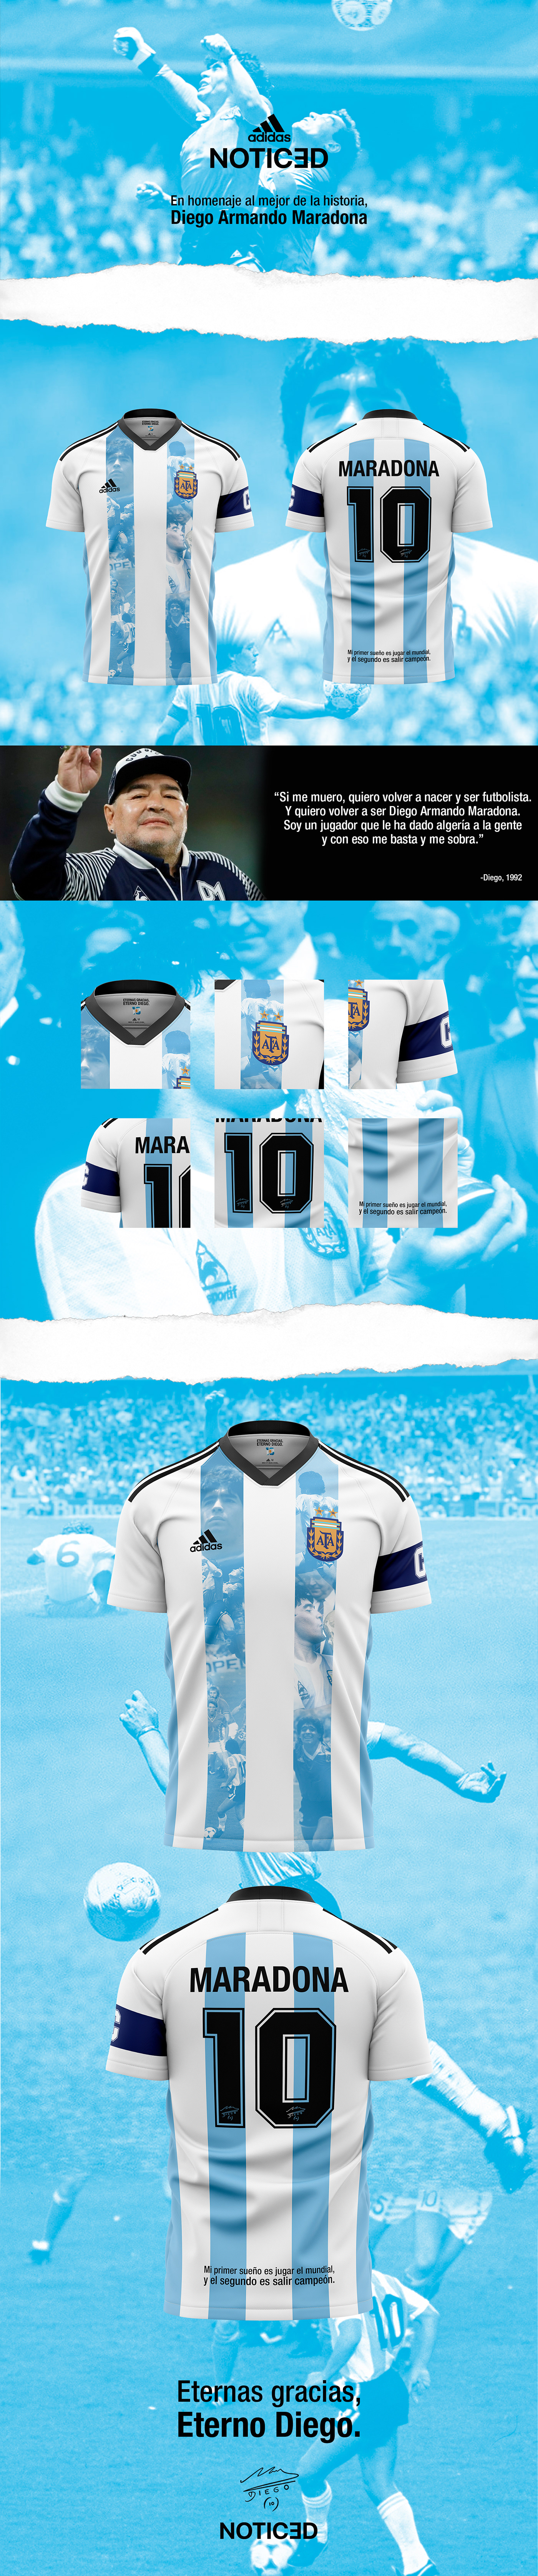 argentina design football Futbol jersey maradona soccer